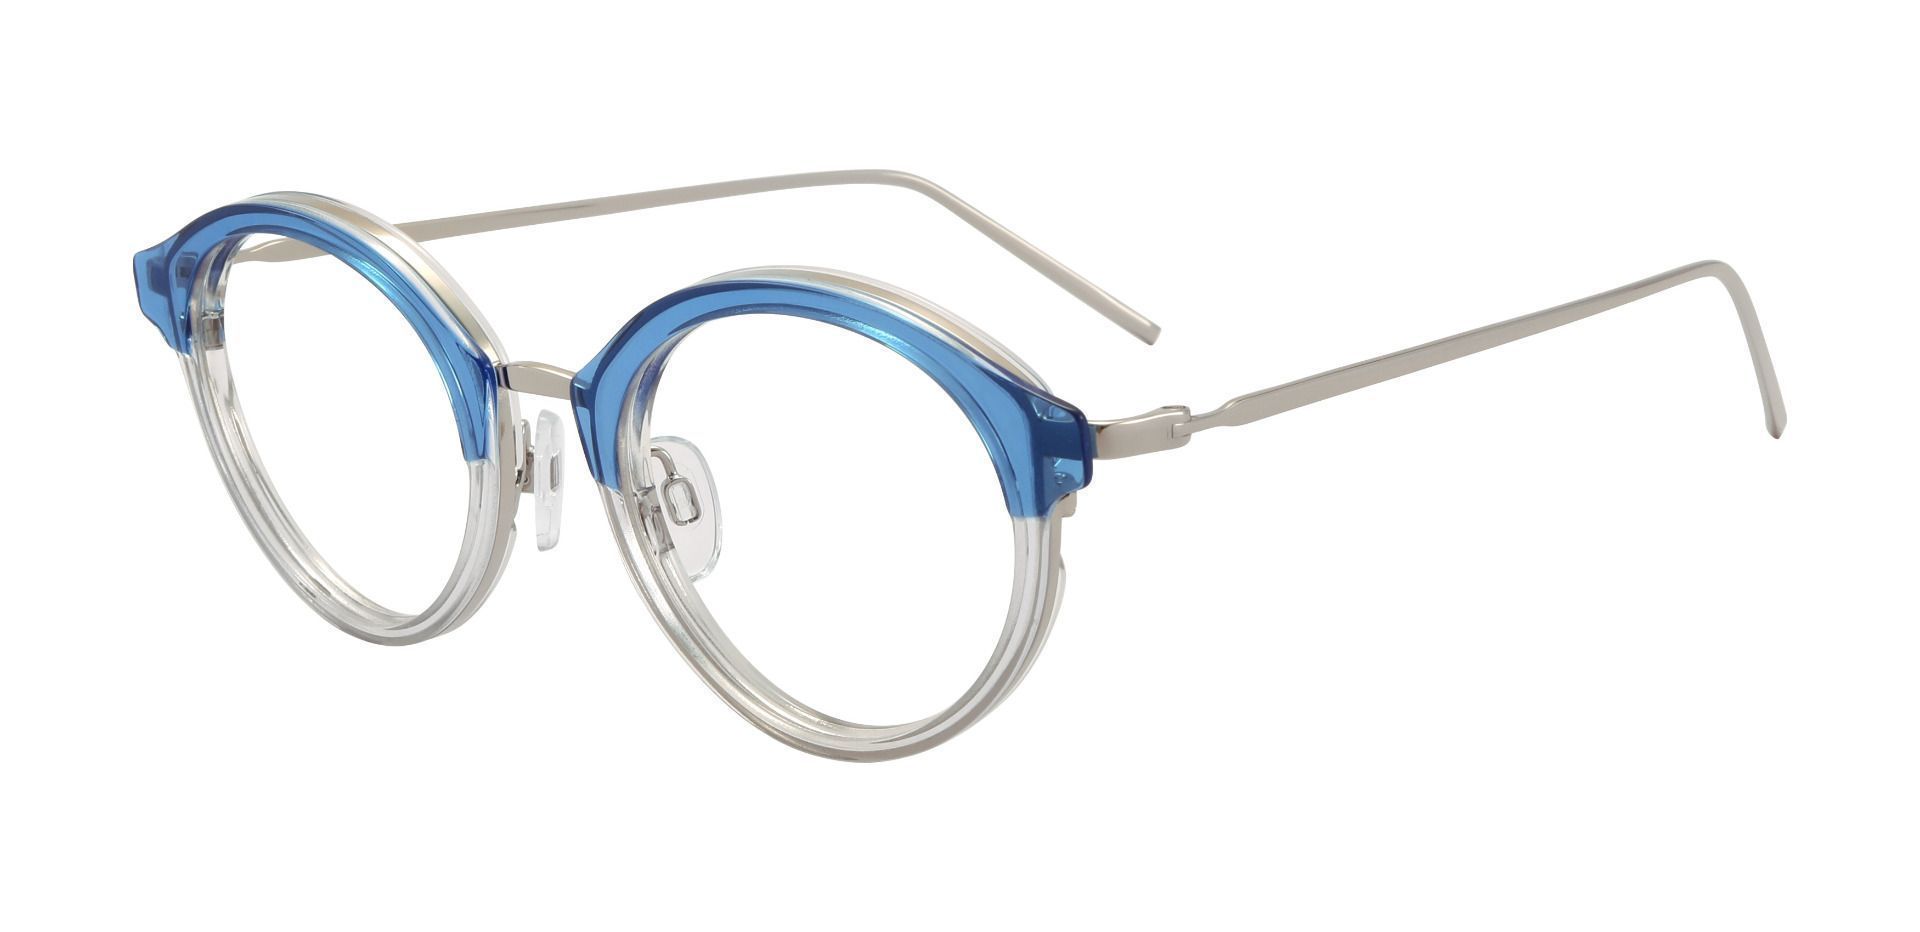 Arima Oval Prescription Glasses - Blue